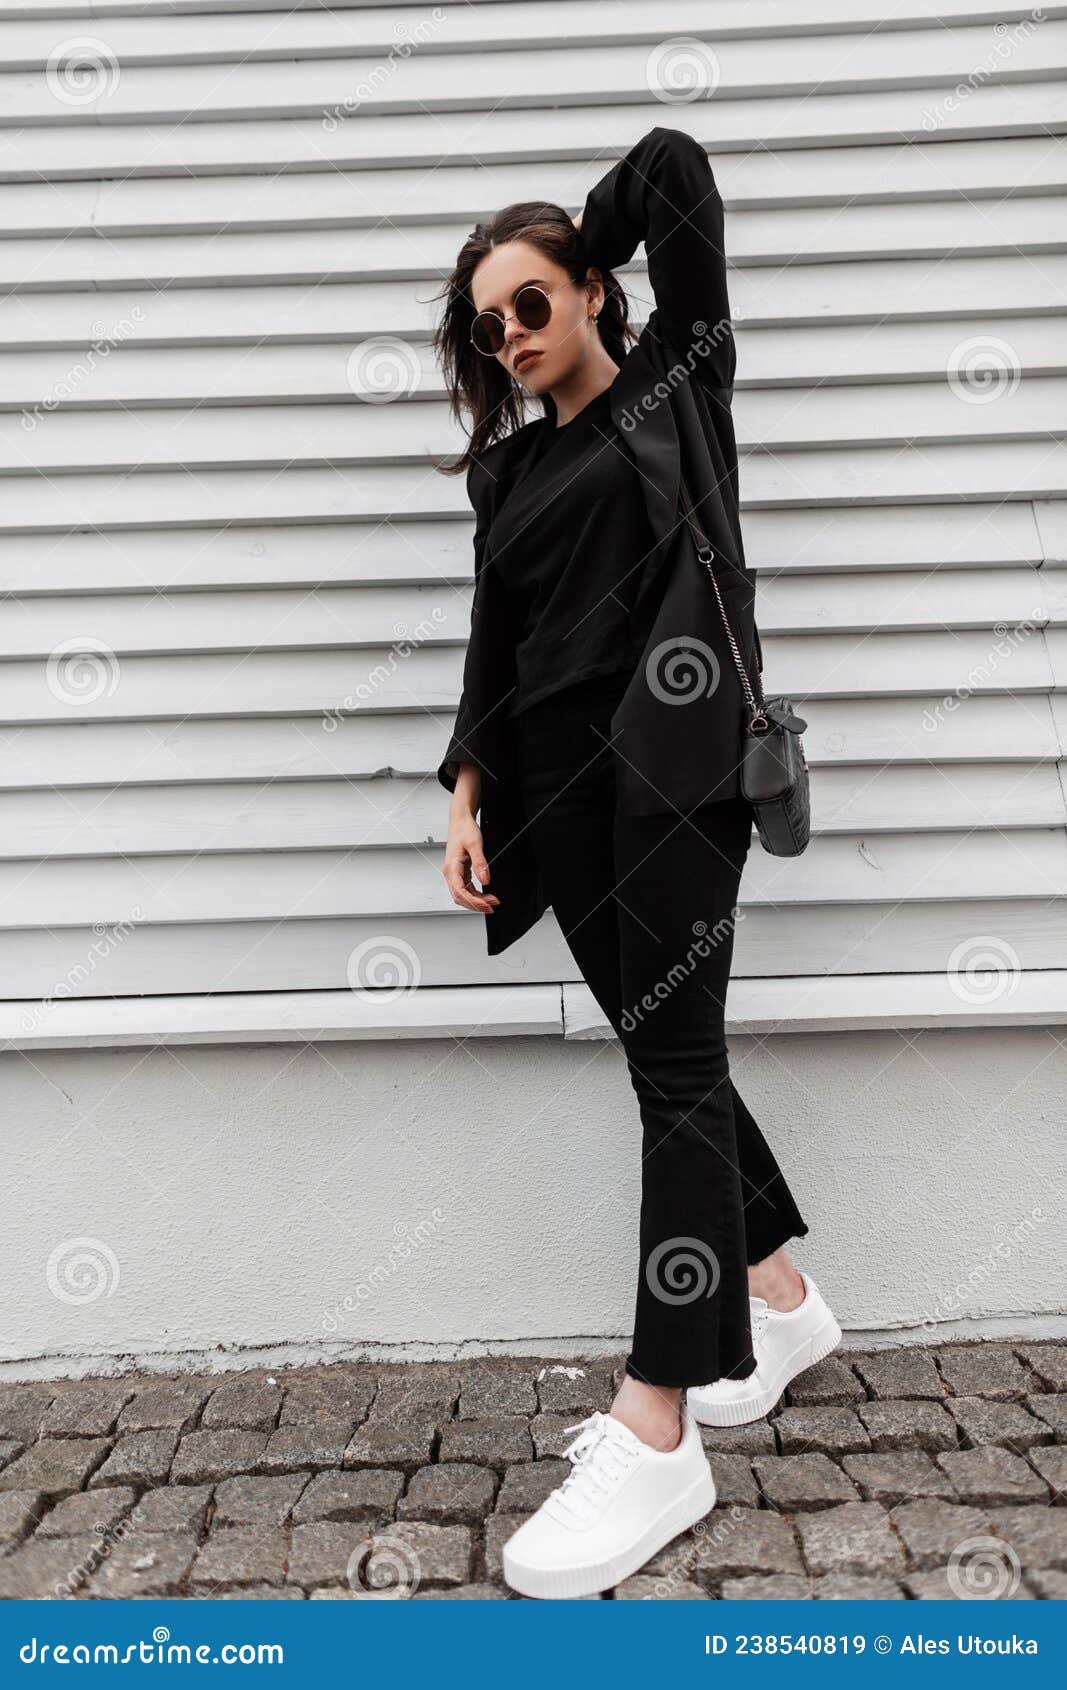 Joven Elegante Con Ropa De Moda De Juventud Negra Con Gafas De Sol En Zapatillas De Moda Blanca Con Bolsos De Cuero Cerca Imagen de archivo - Imagen modelo, zapatos: 238540819